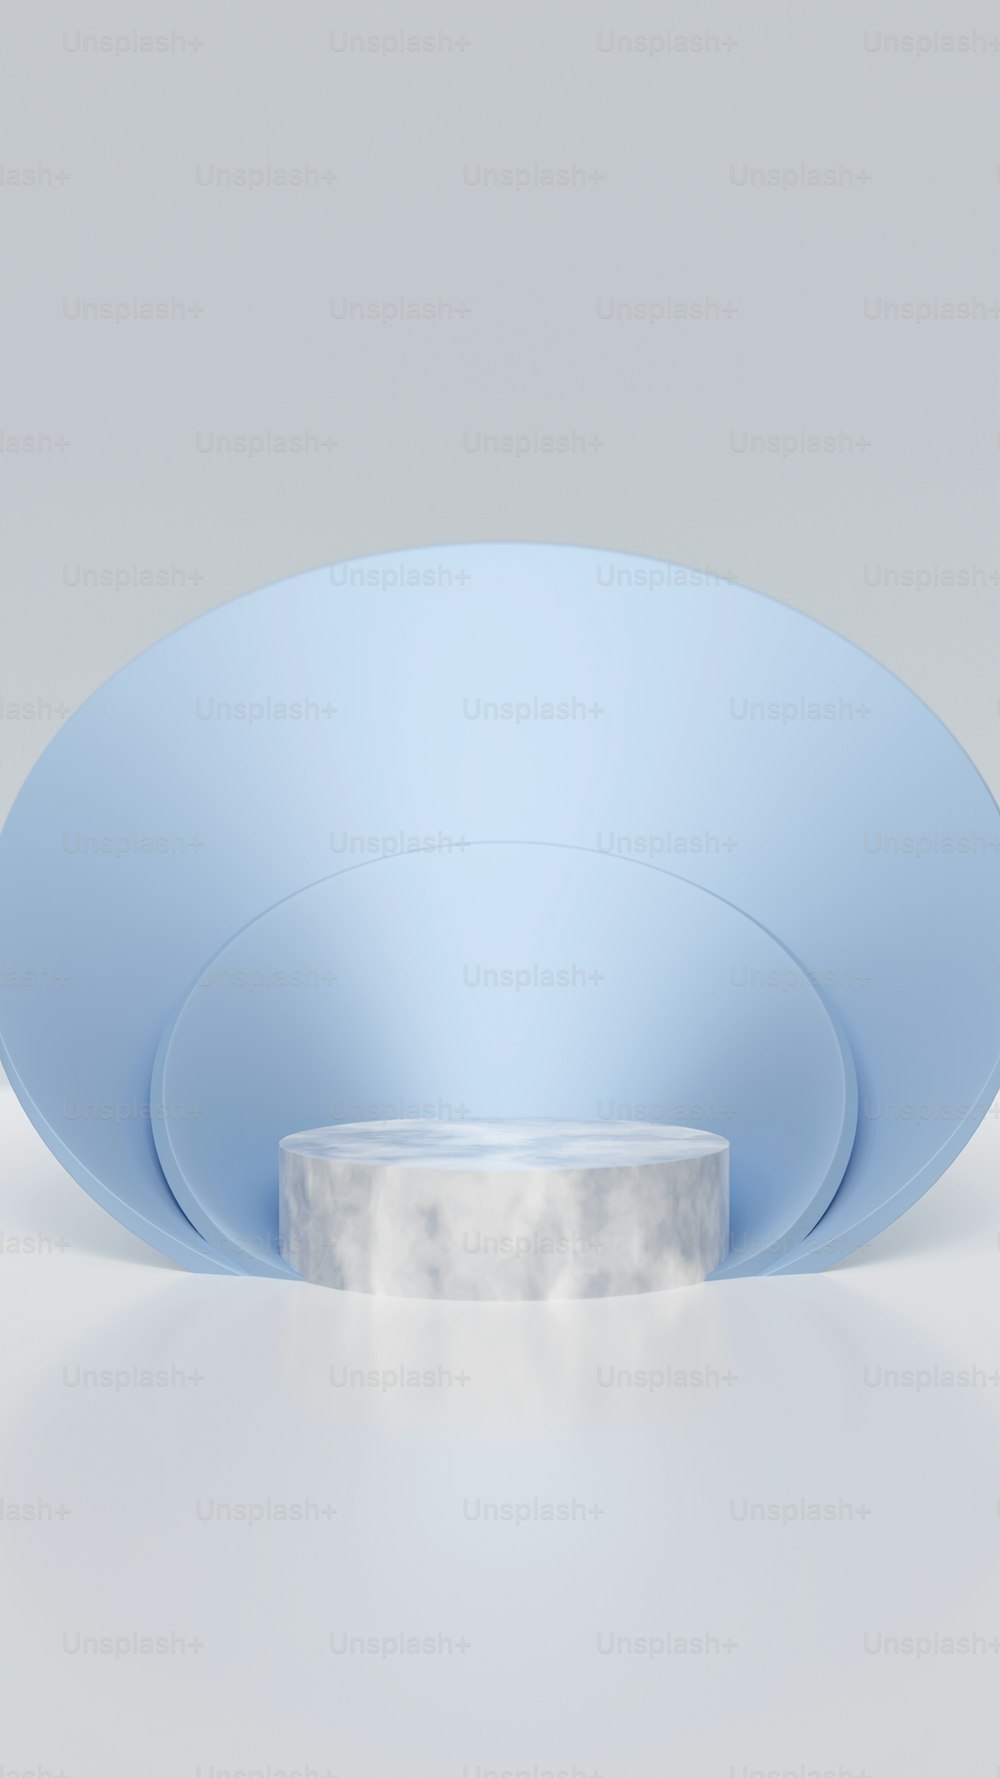 Un tazón azul con una base blanca sobre una superficie blanca